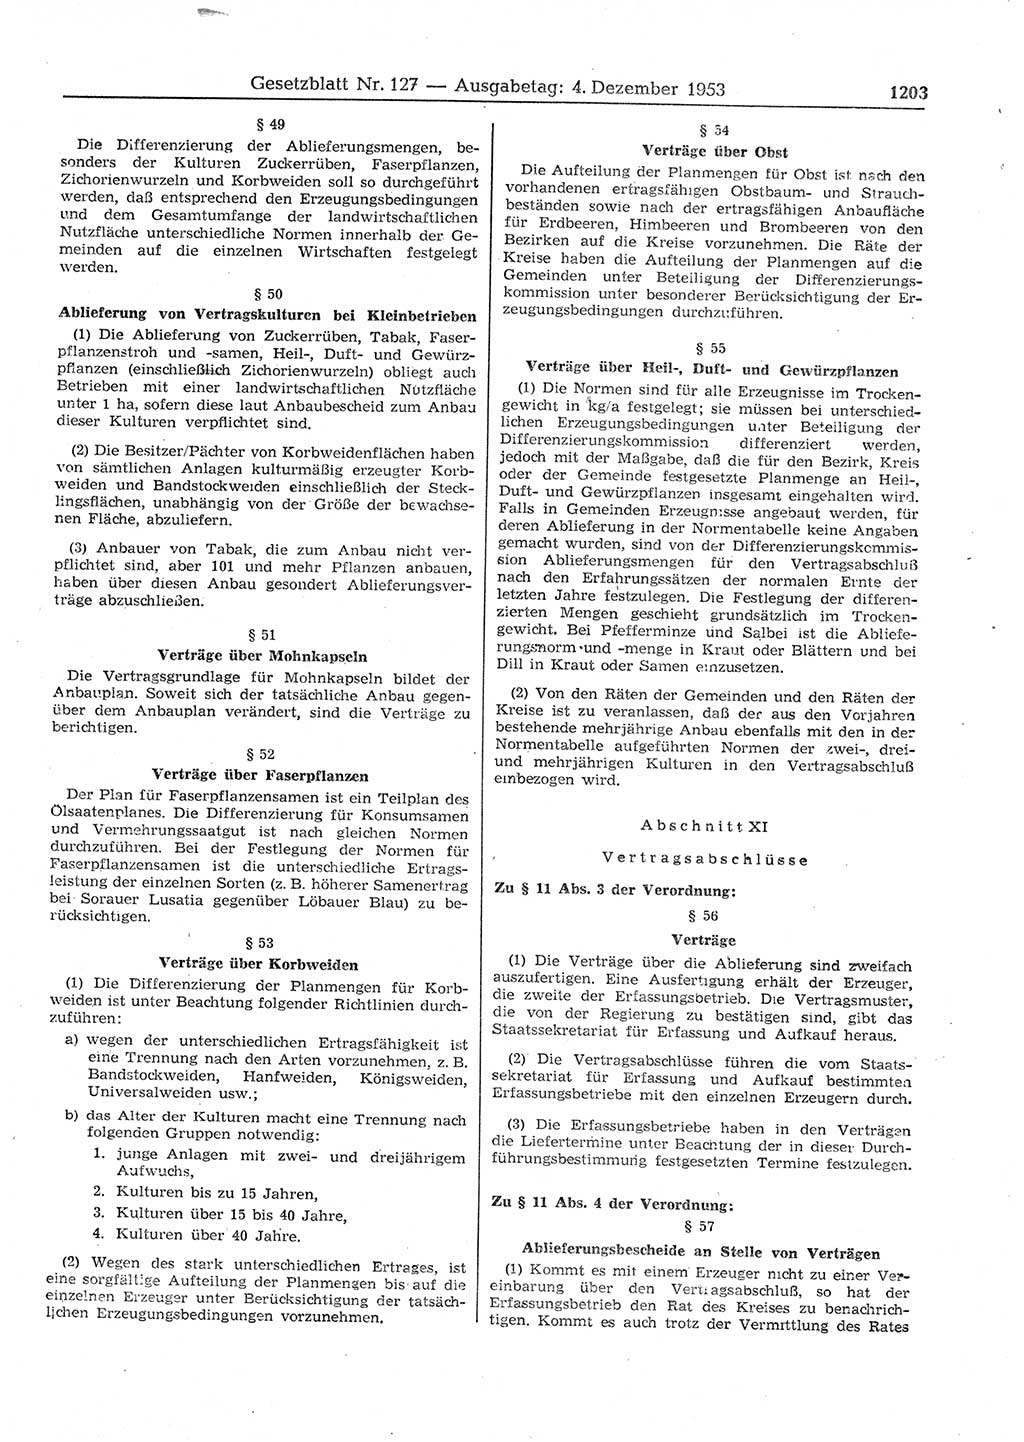 Gesetzblatt (GBl.) der Deutschen Demokratischen Republik (DDR) 1953, Seite 1203 (GBl. DDR 1953, S. 1203)